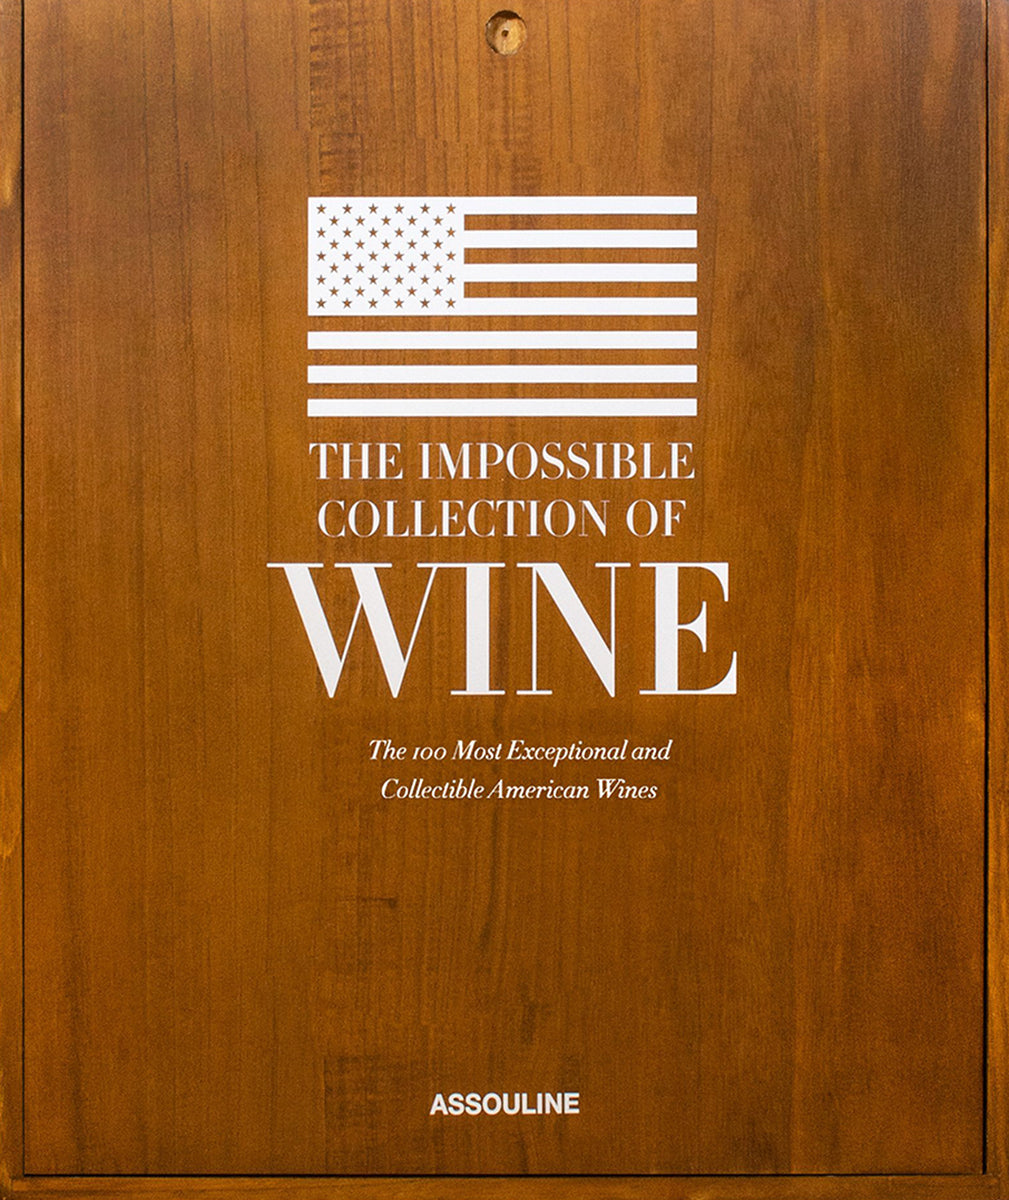 Assouline La collezione impossibile del vino americano